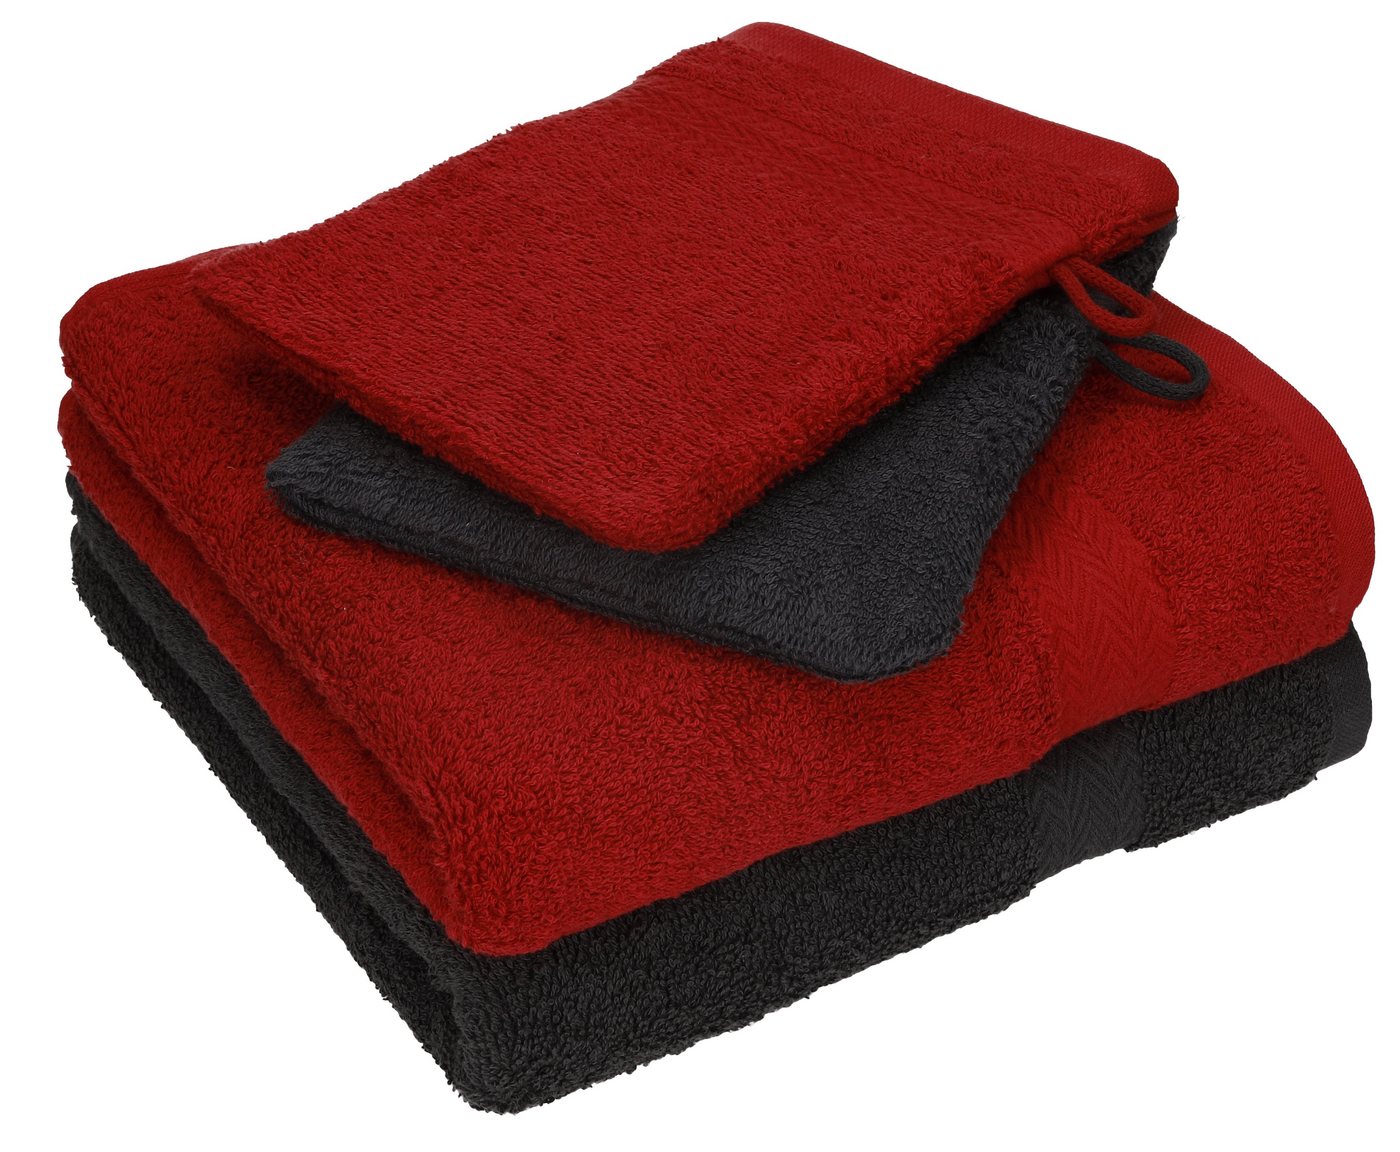 Betz Handtuch Set 4 tlg. Handtuch Set HAPPY Pack 100% Baumwolle 2 Handtücher 2 Waschhandschuhe, 100% Baumwolle von Betz